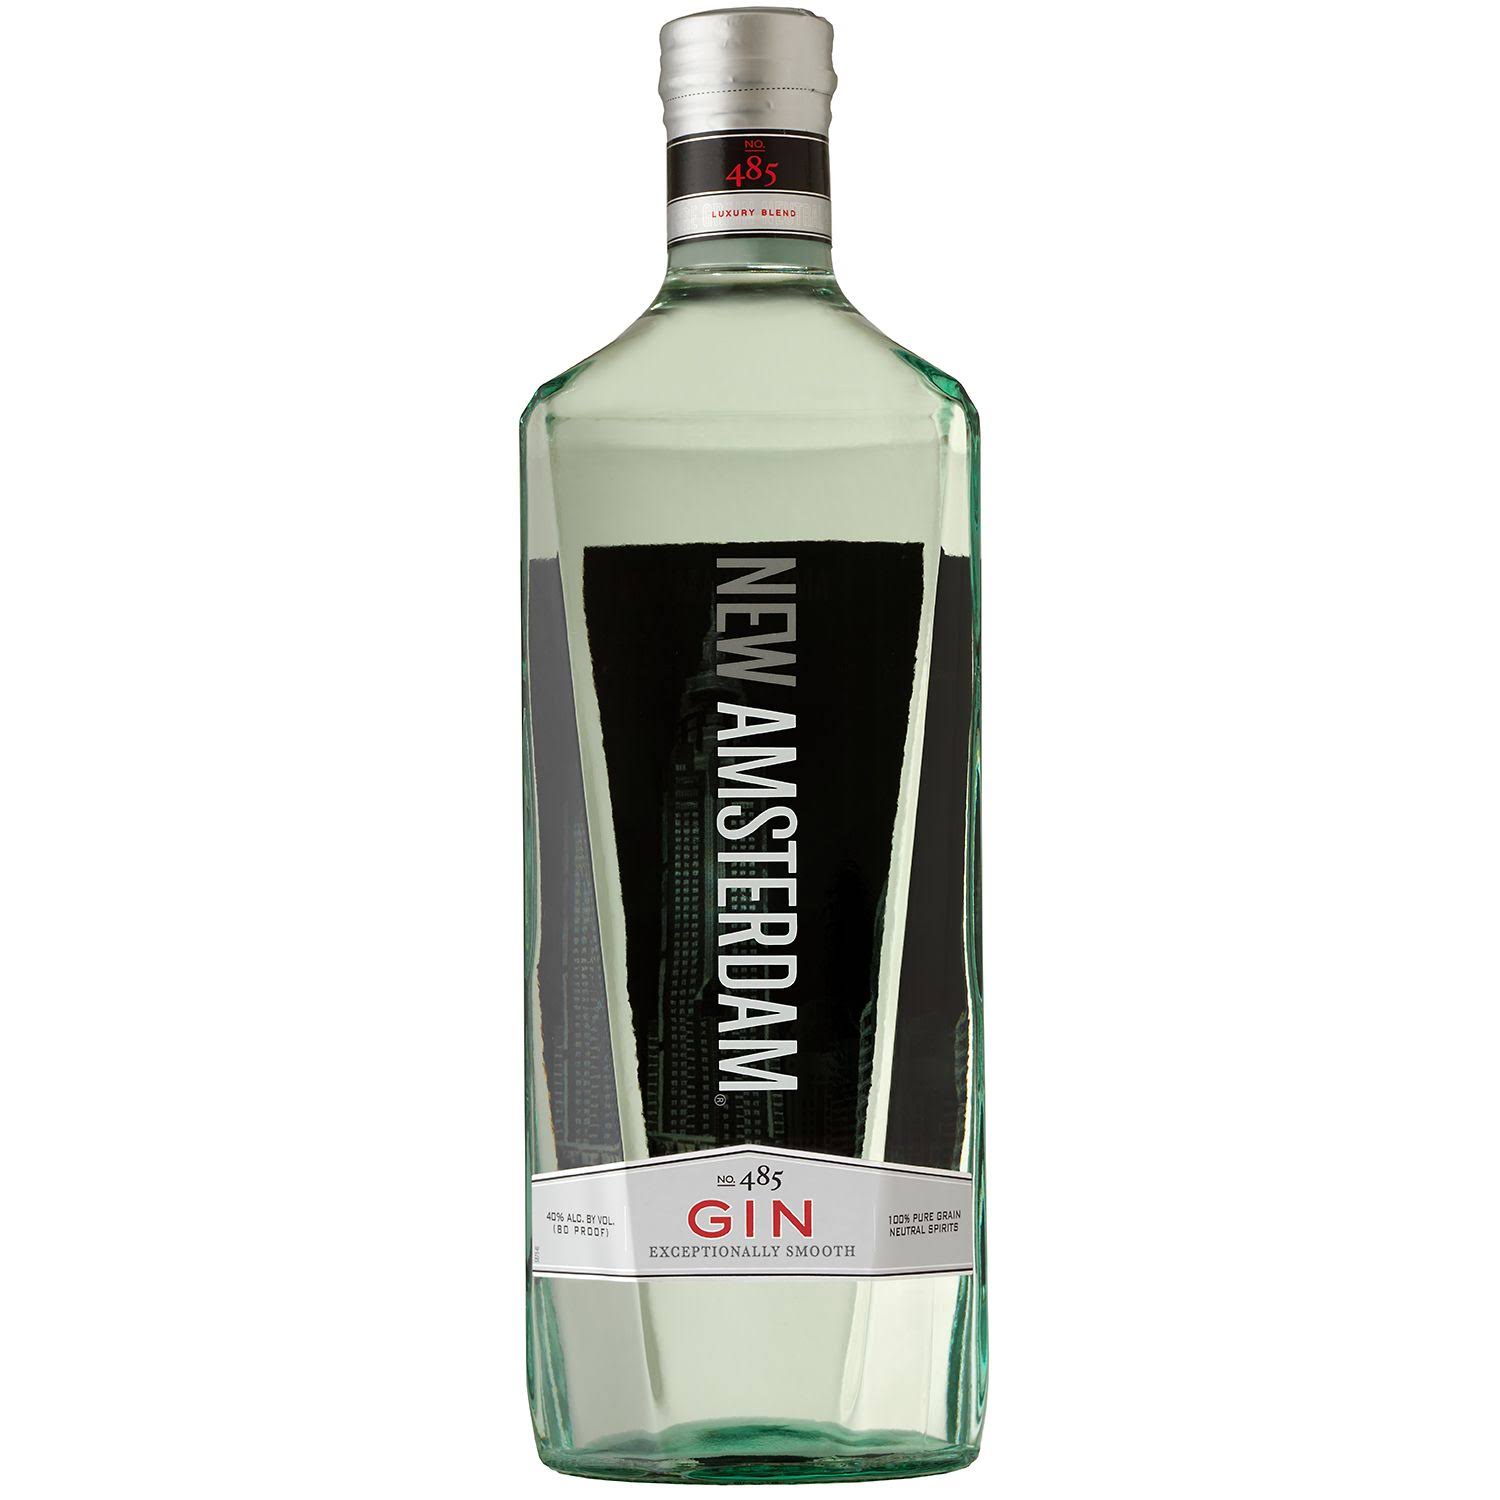 New Amsterdam Gin, No. 485 - 1.75 l